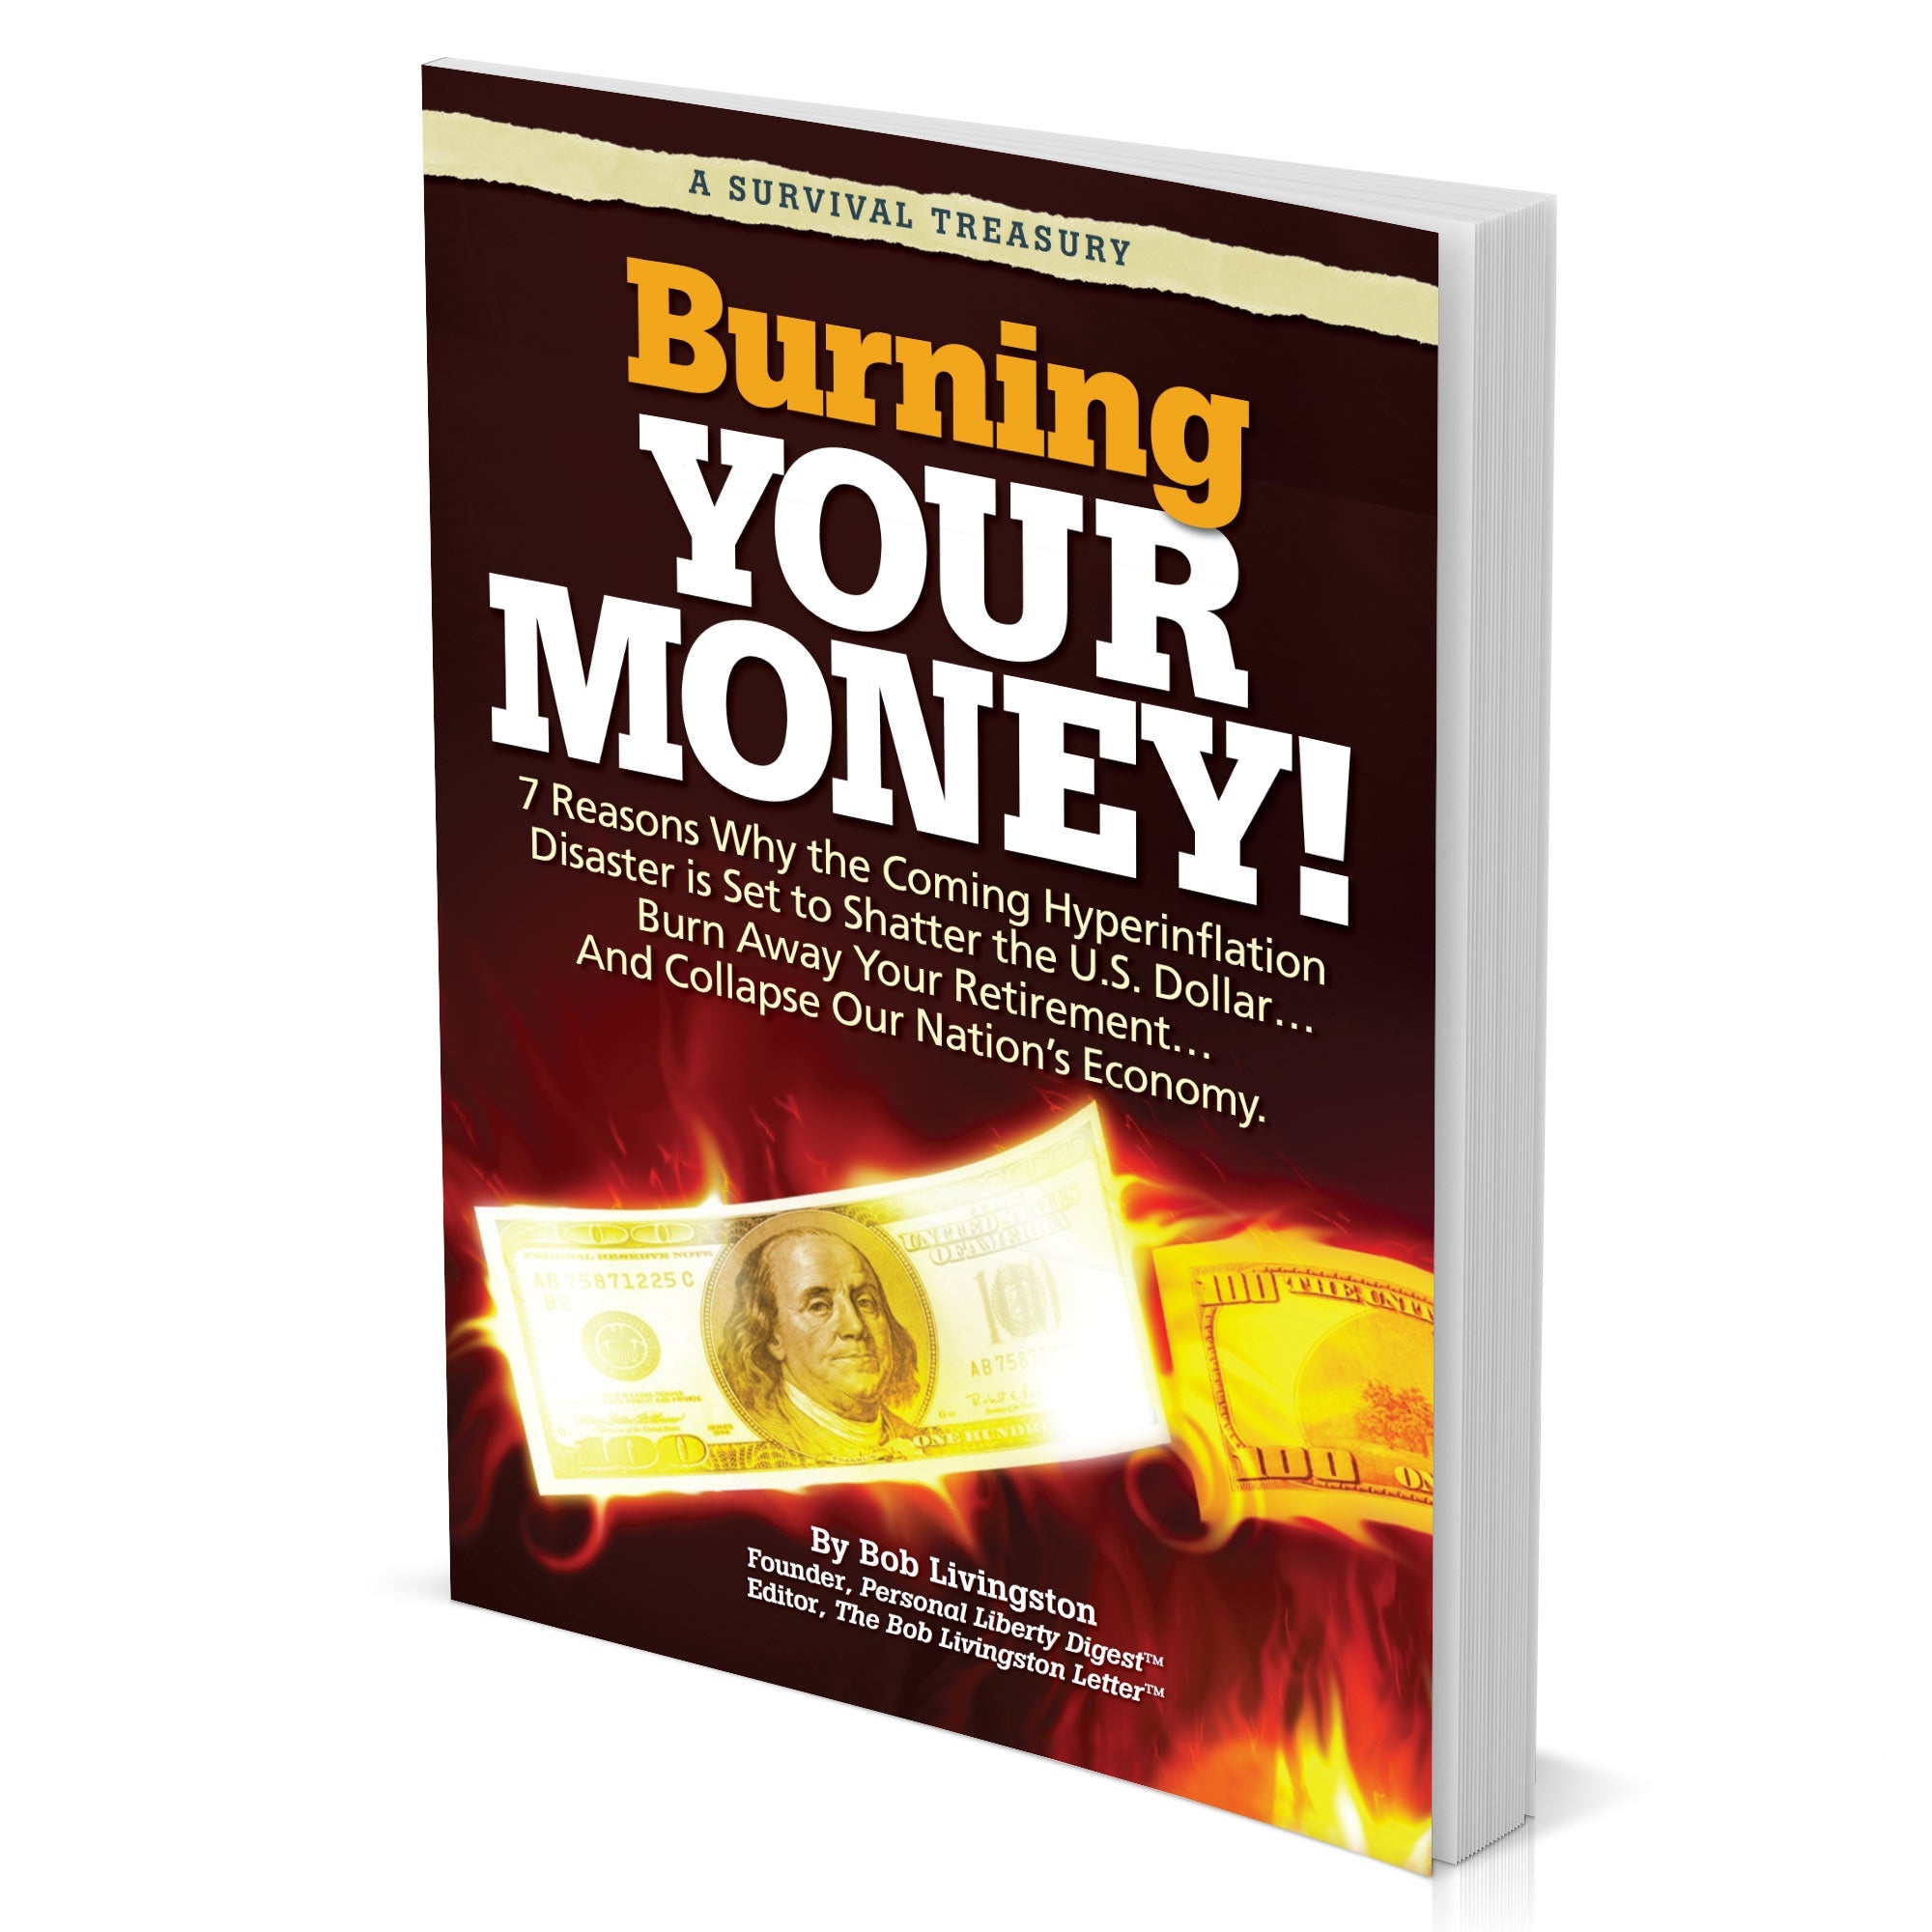 Burning Your Money!